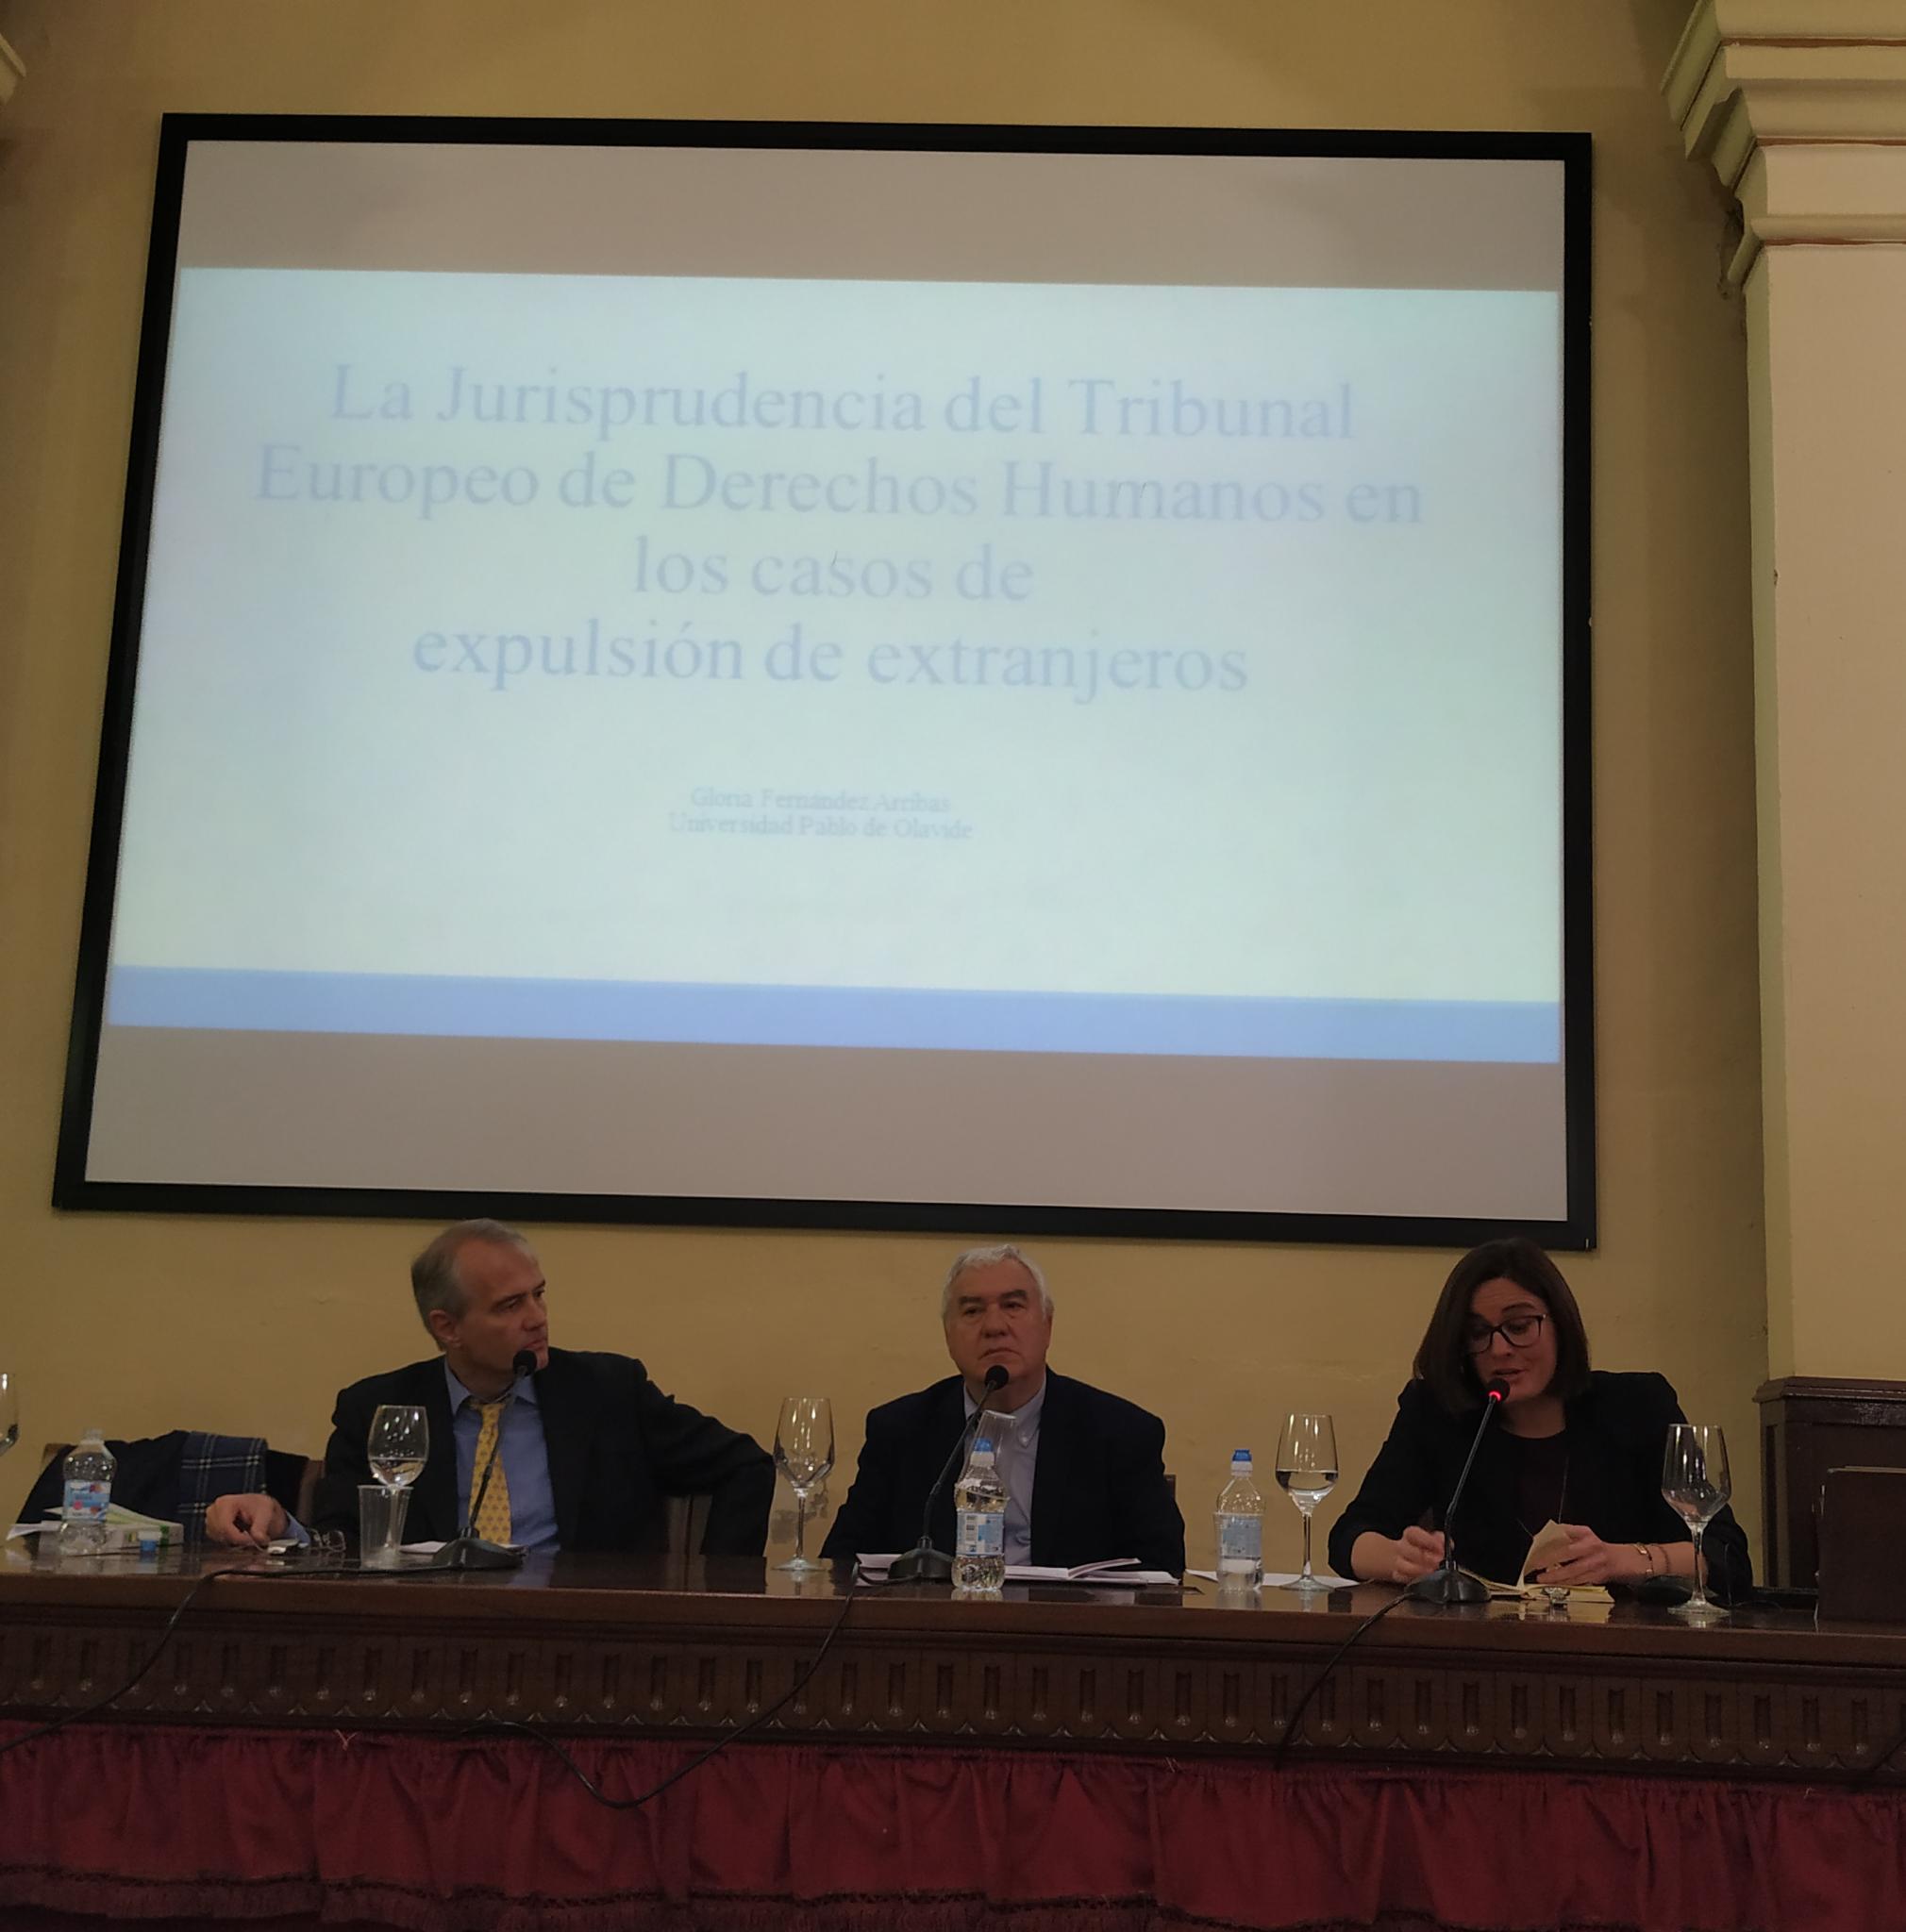 Imagen en la que se puede apreciar la intervención de los profesores Roldán Barbero y Fernández Arribas, detrás de ellos hay una pantalla de proyección